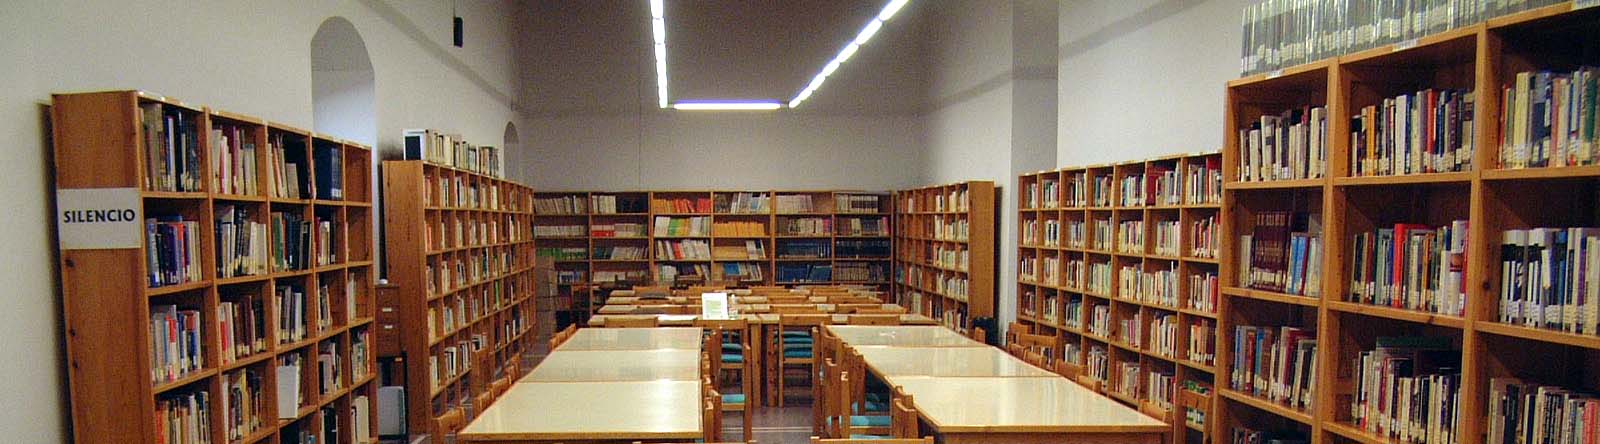 [biblioteca.JPG]